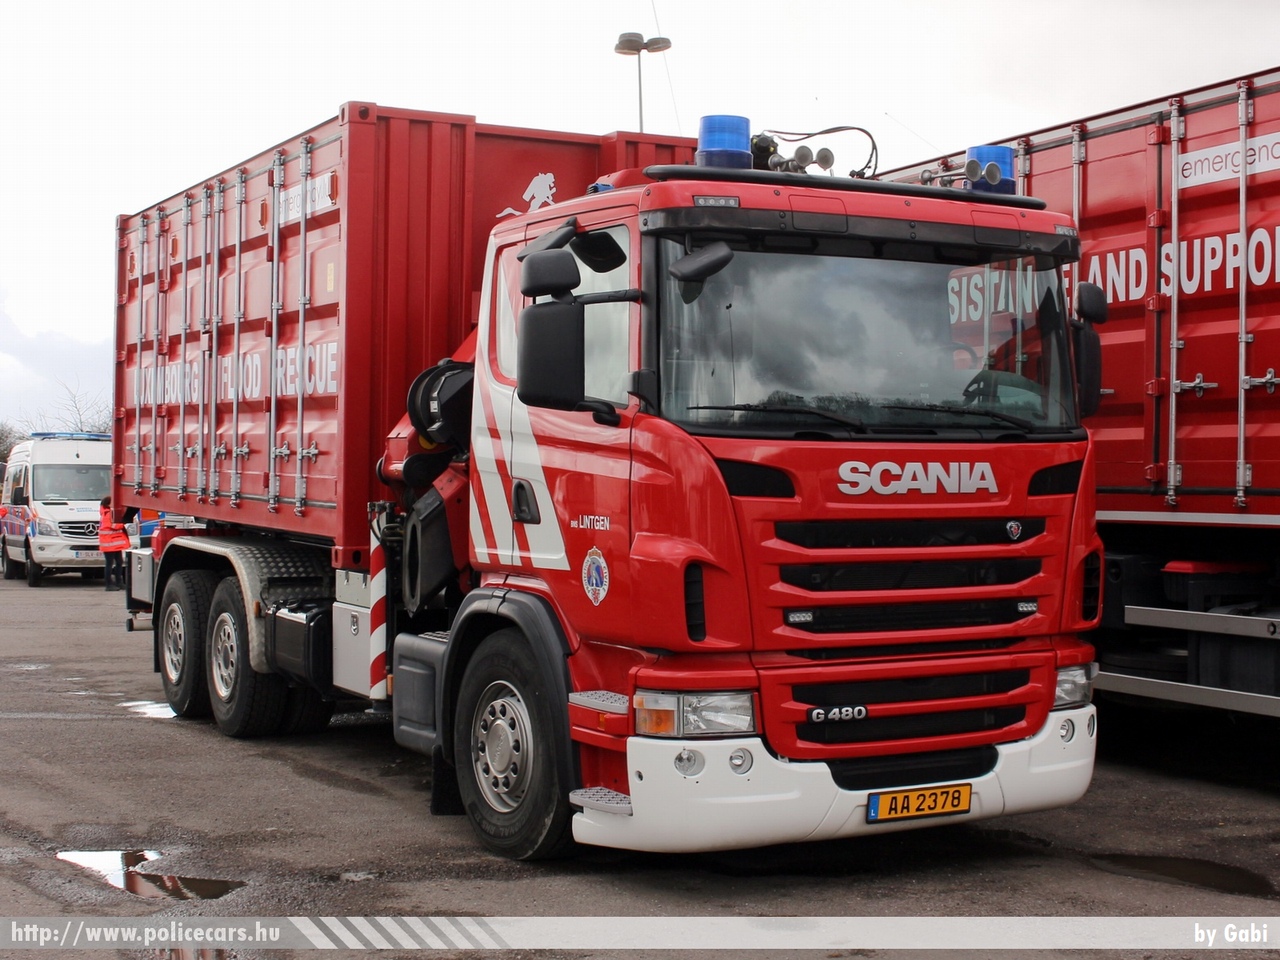 Scania G480, Lintgen, fotó: Gabi
Keywords: luxemburg tûzoltó tûzoltóautó tûzoltóság fire firetruck luxembourg